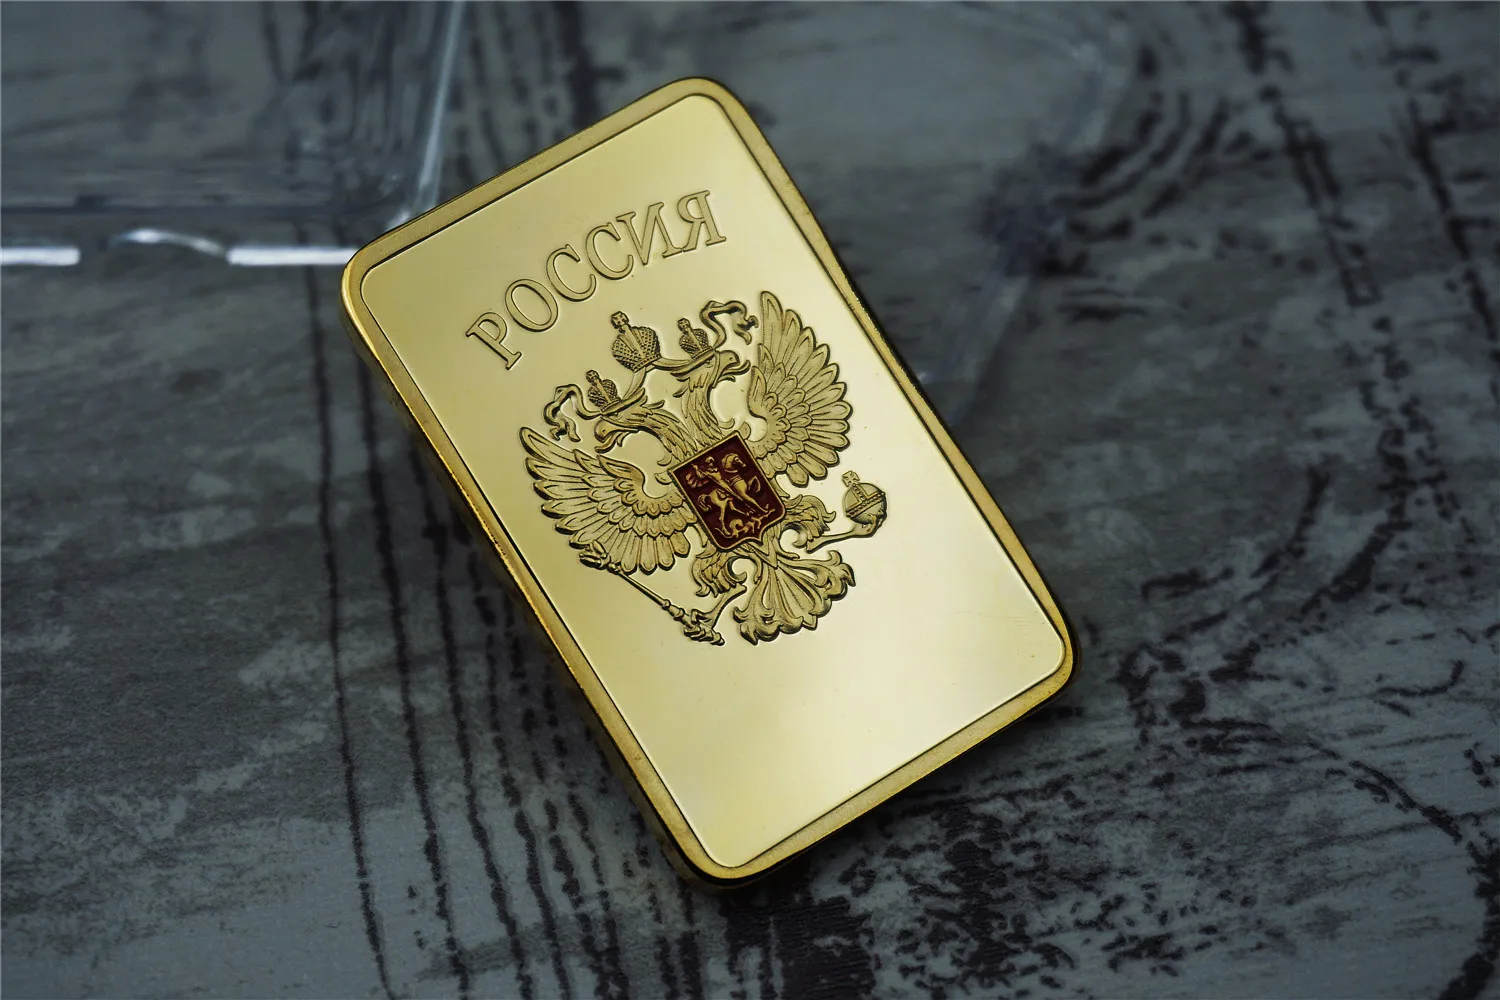 Banhado a ouro bloco união soviética mapa significado comemorativo  medalhões moedas federação russa coleção artesanato medalha - AliExpress